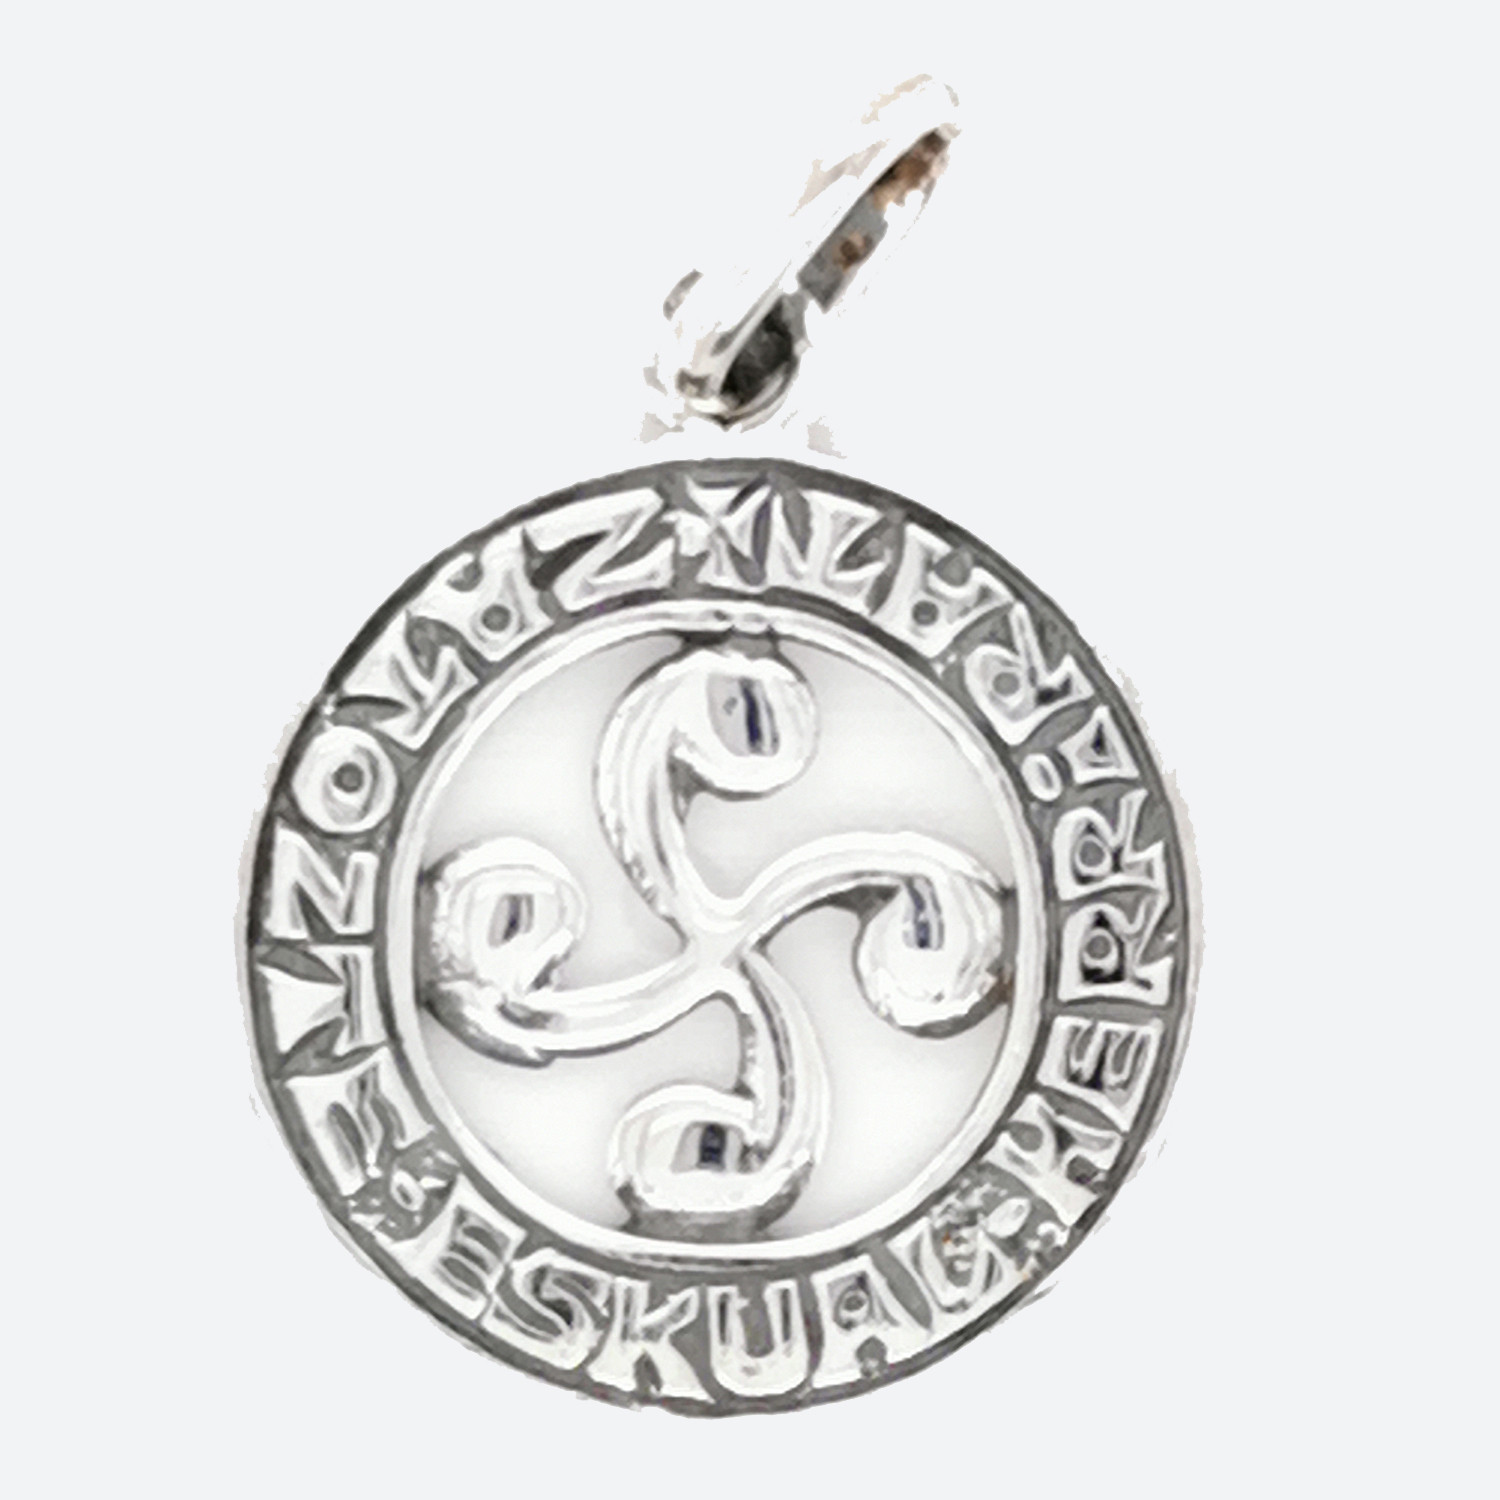 Pendentif croix basque "Lauburu" argent gravé